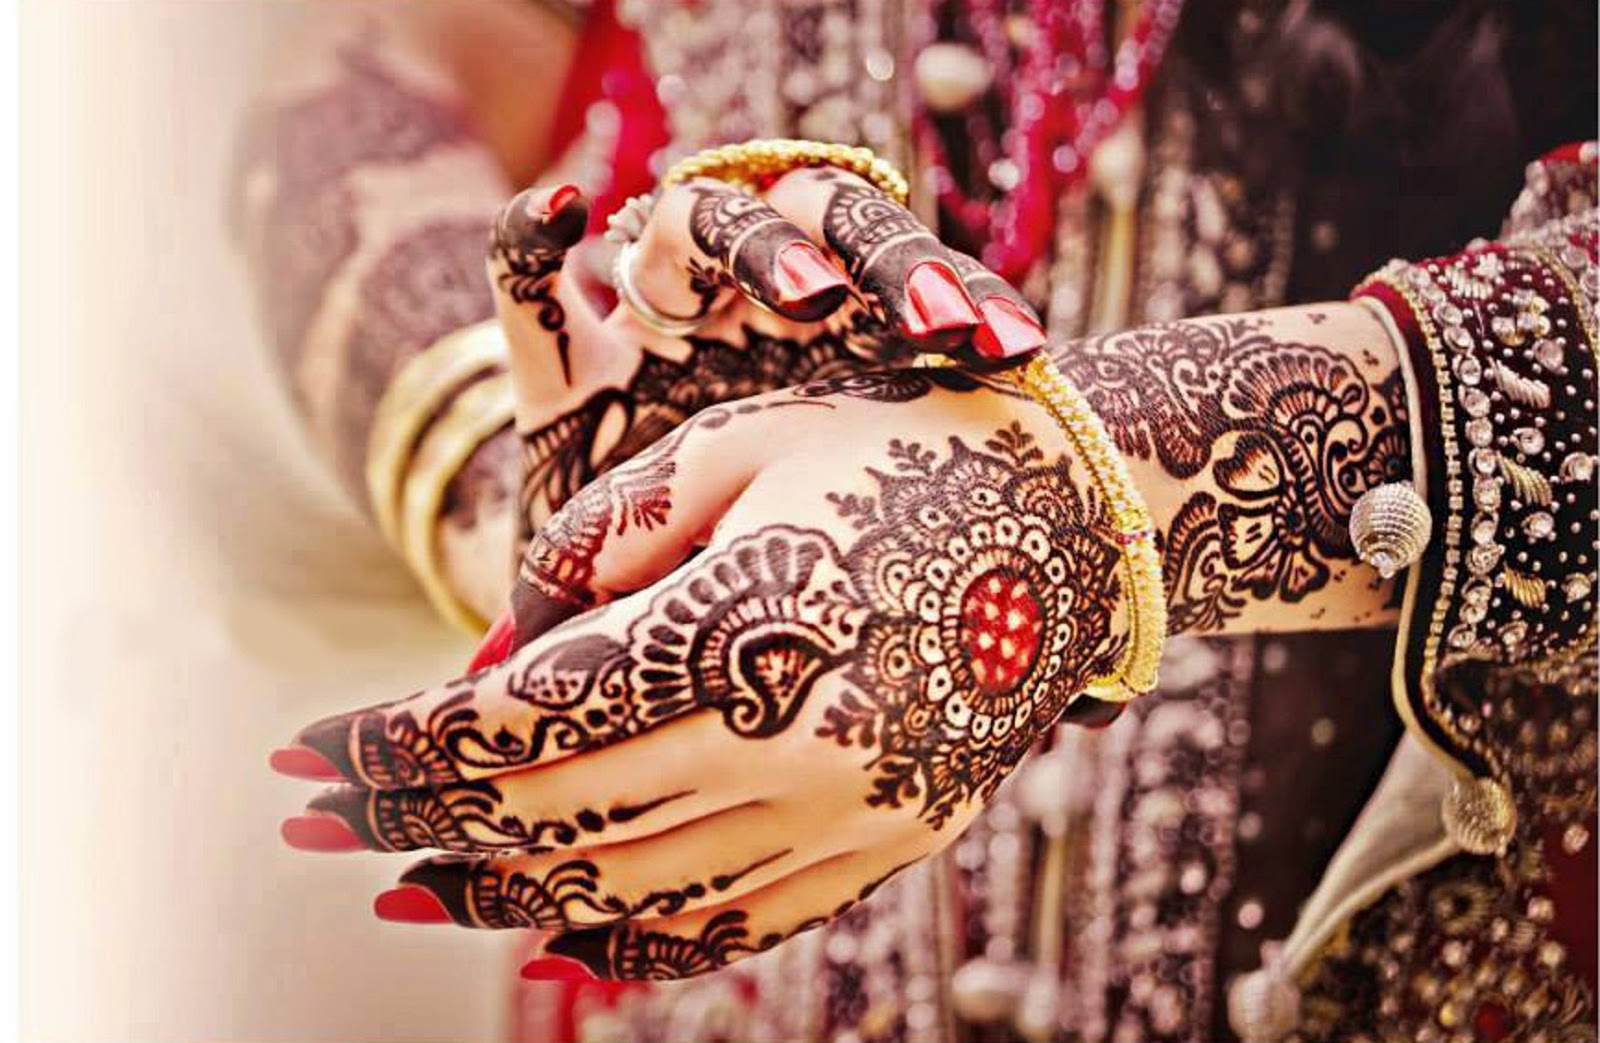 भारतीय शादी में मेहंदी से लेकर हल्दी तक होने वाली रस्मों से जुड़े हुए हैं कई वैज्ञानिक तथ्य